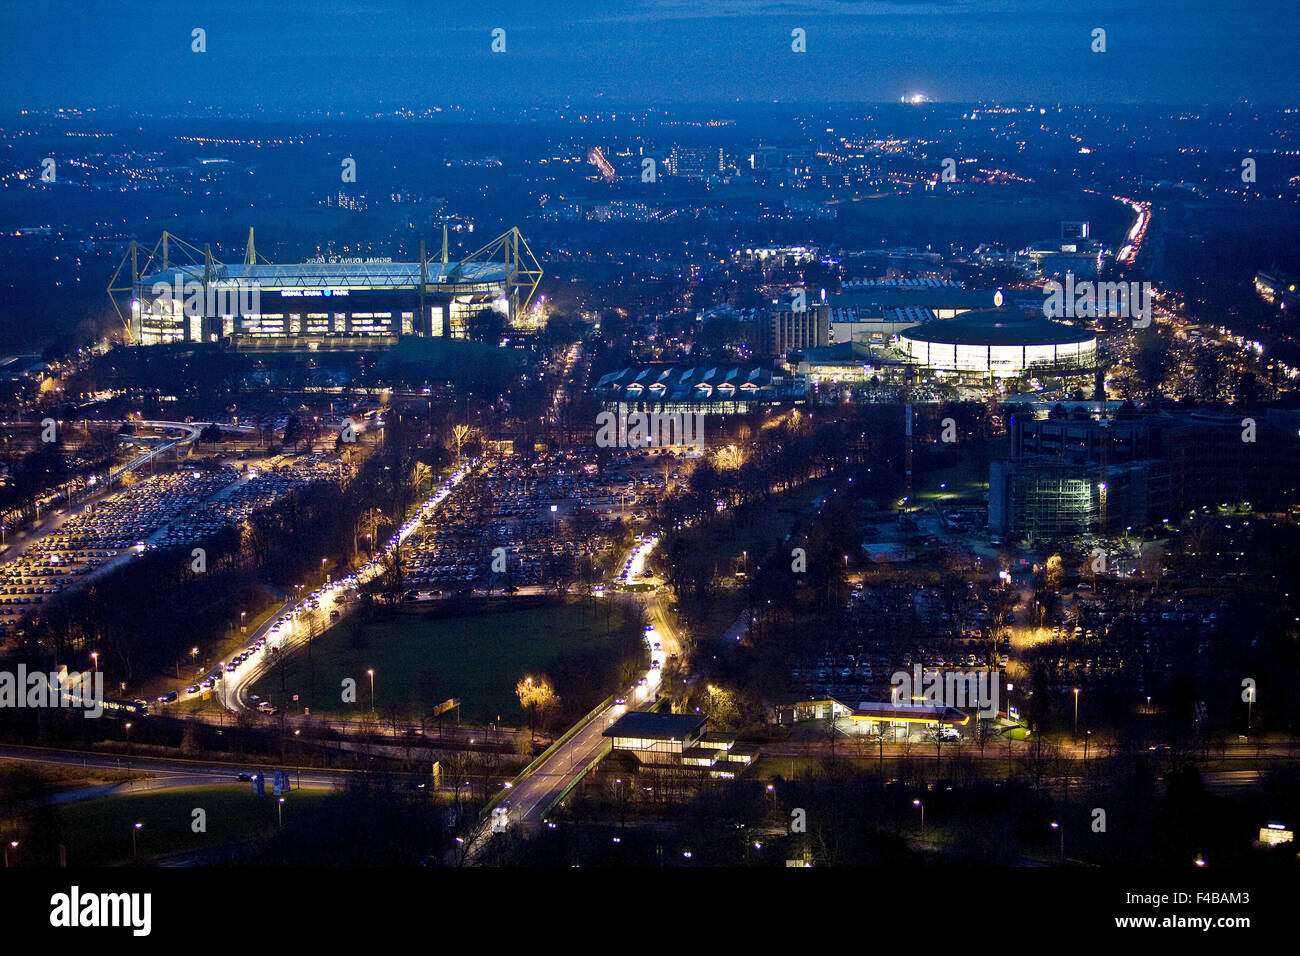 Vue aérienne au crépuscule, Dortmund, Allemagne. Banque D'Images